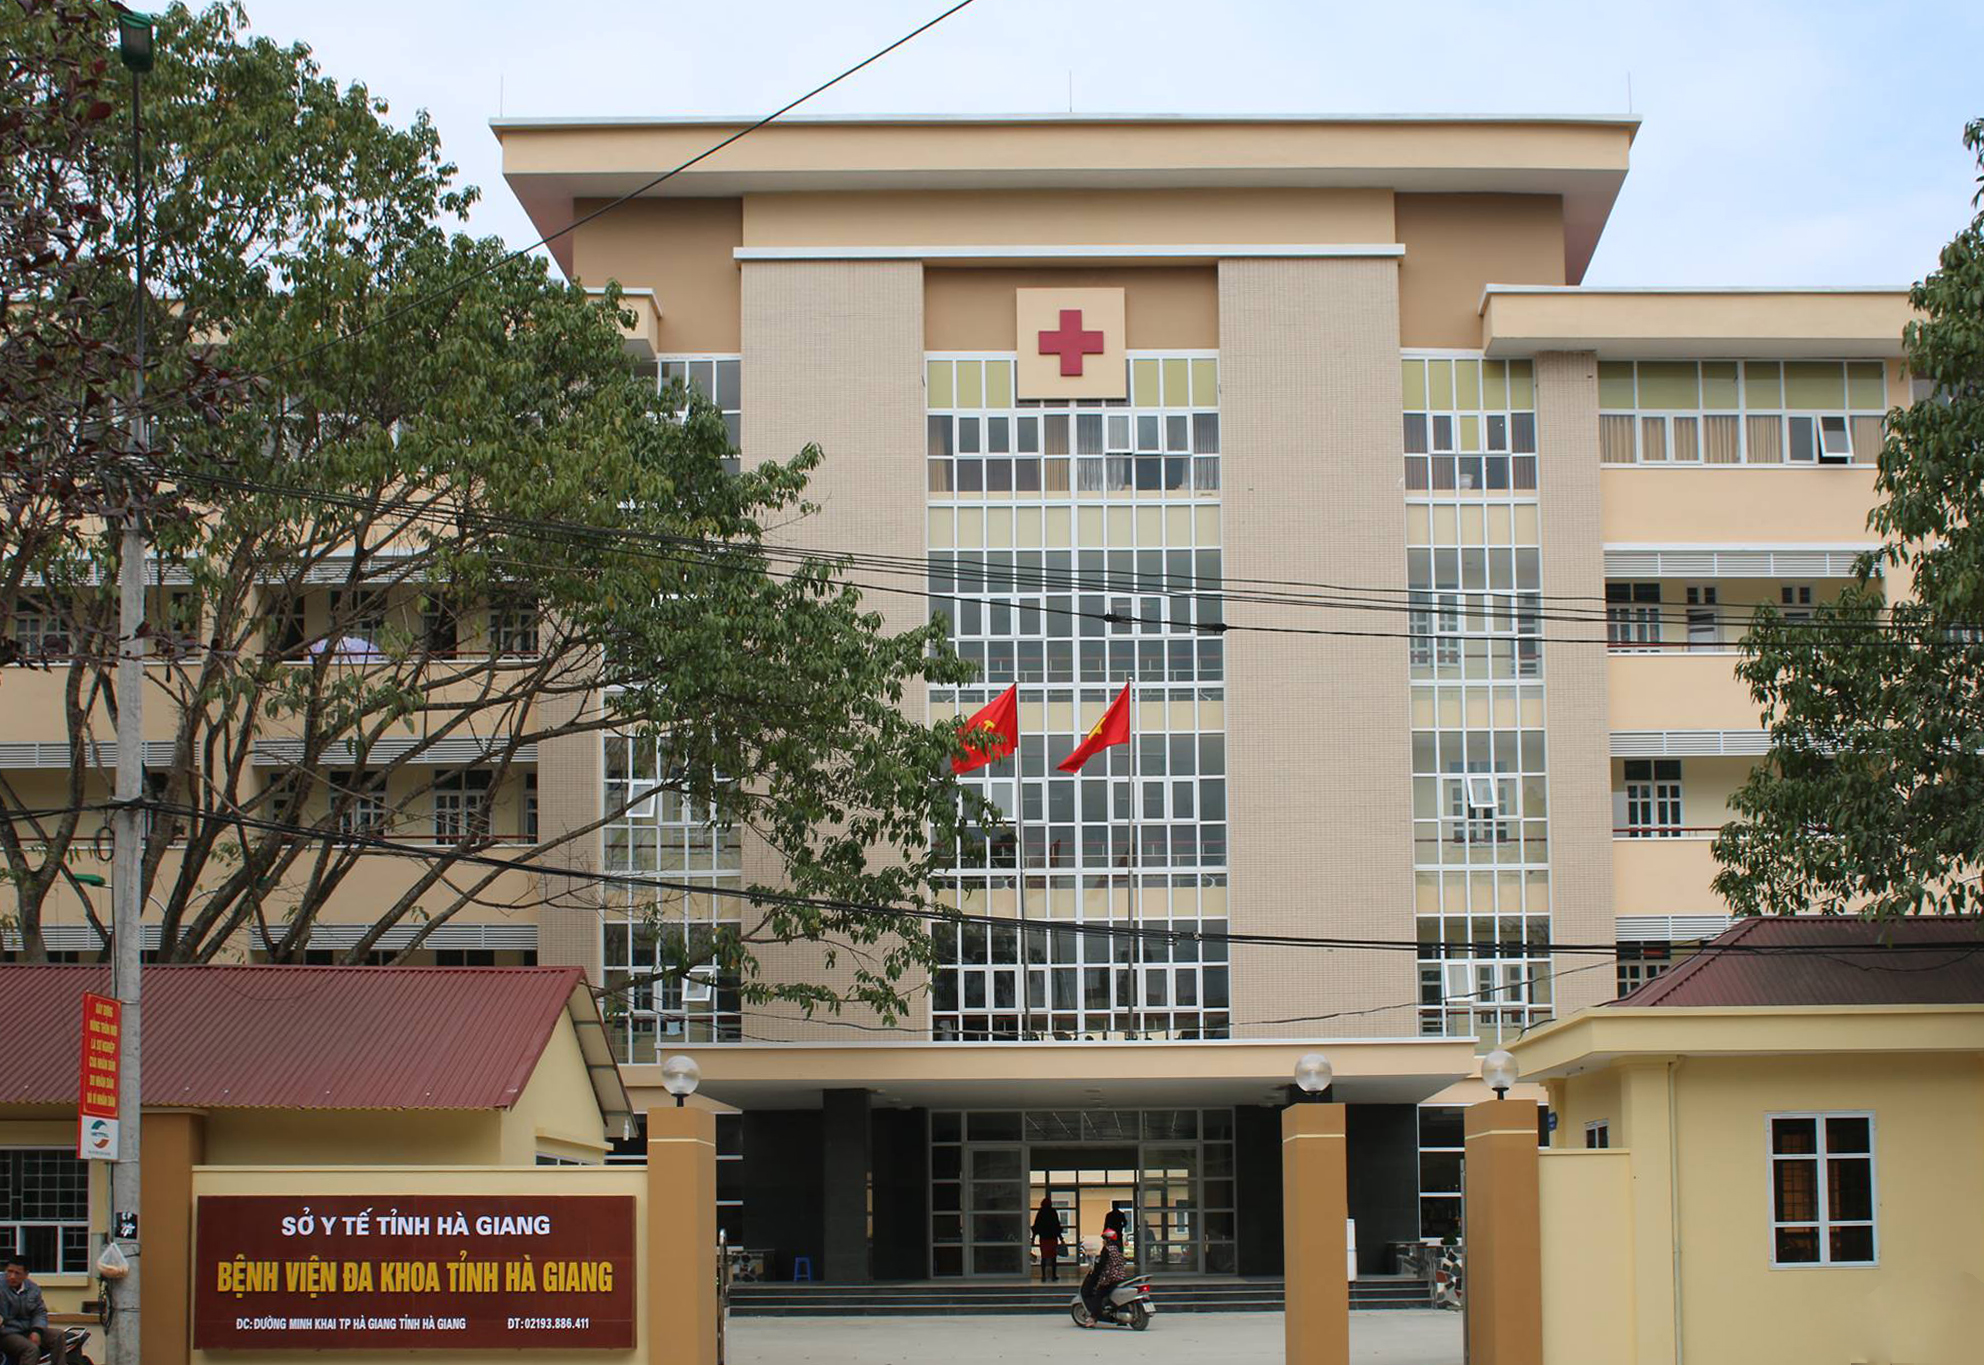 Bệnh viện Đa khoa tỉnh Hà Giang và thông tin địa chỉ bảng giá khám bệnh